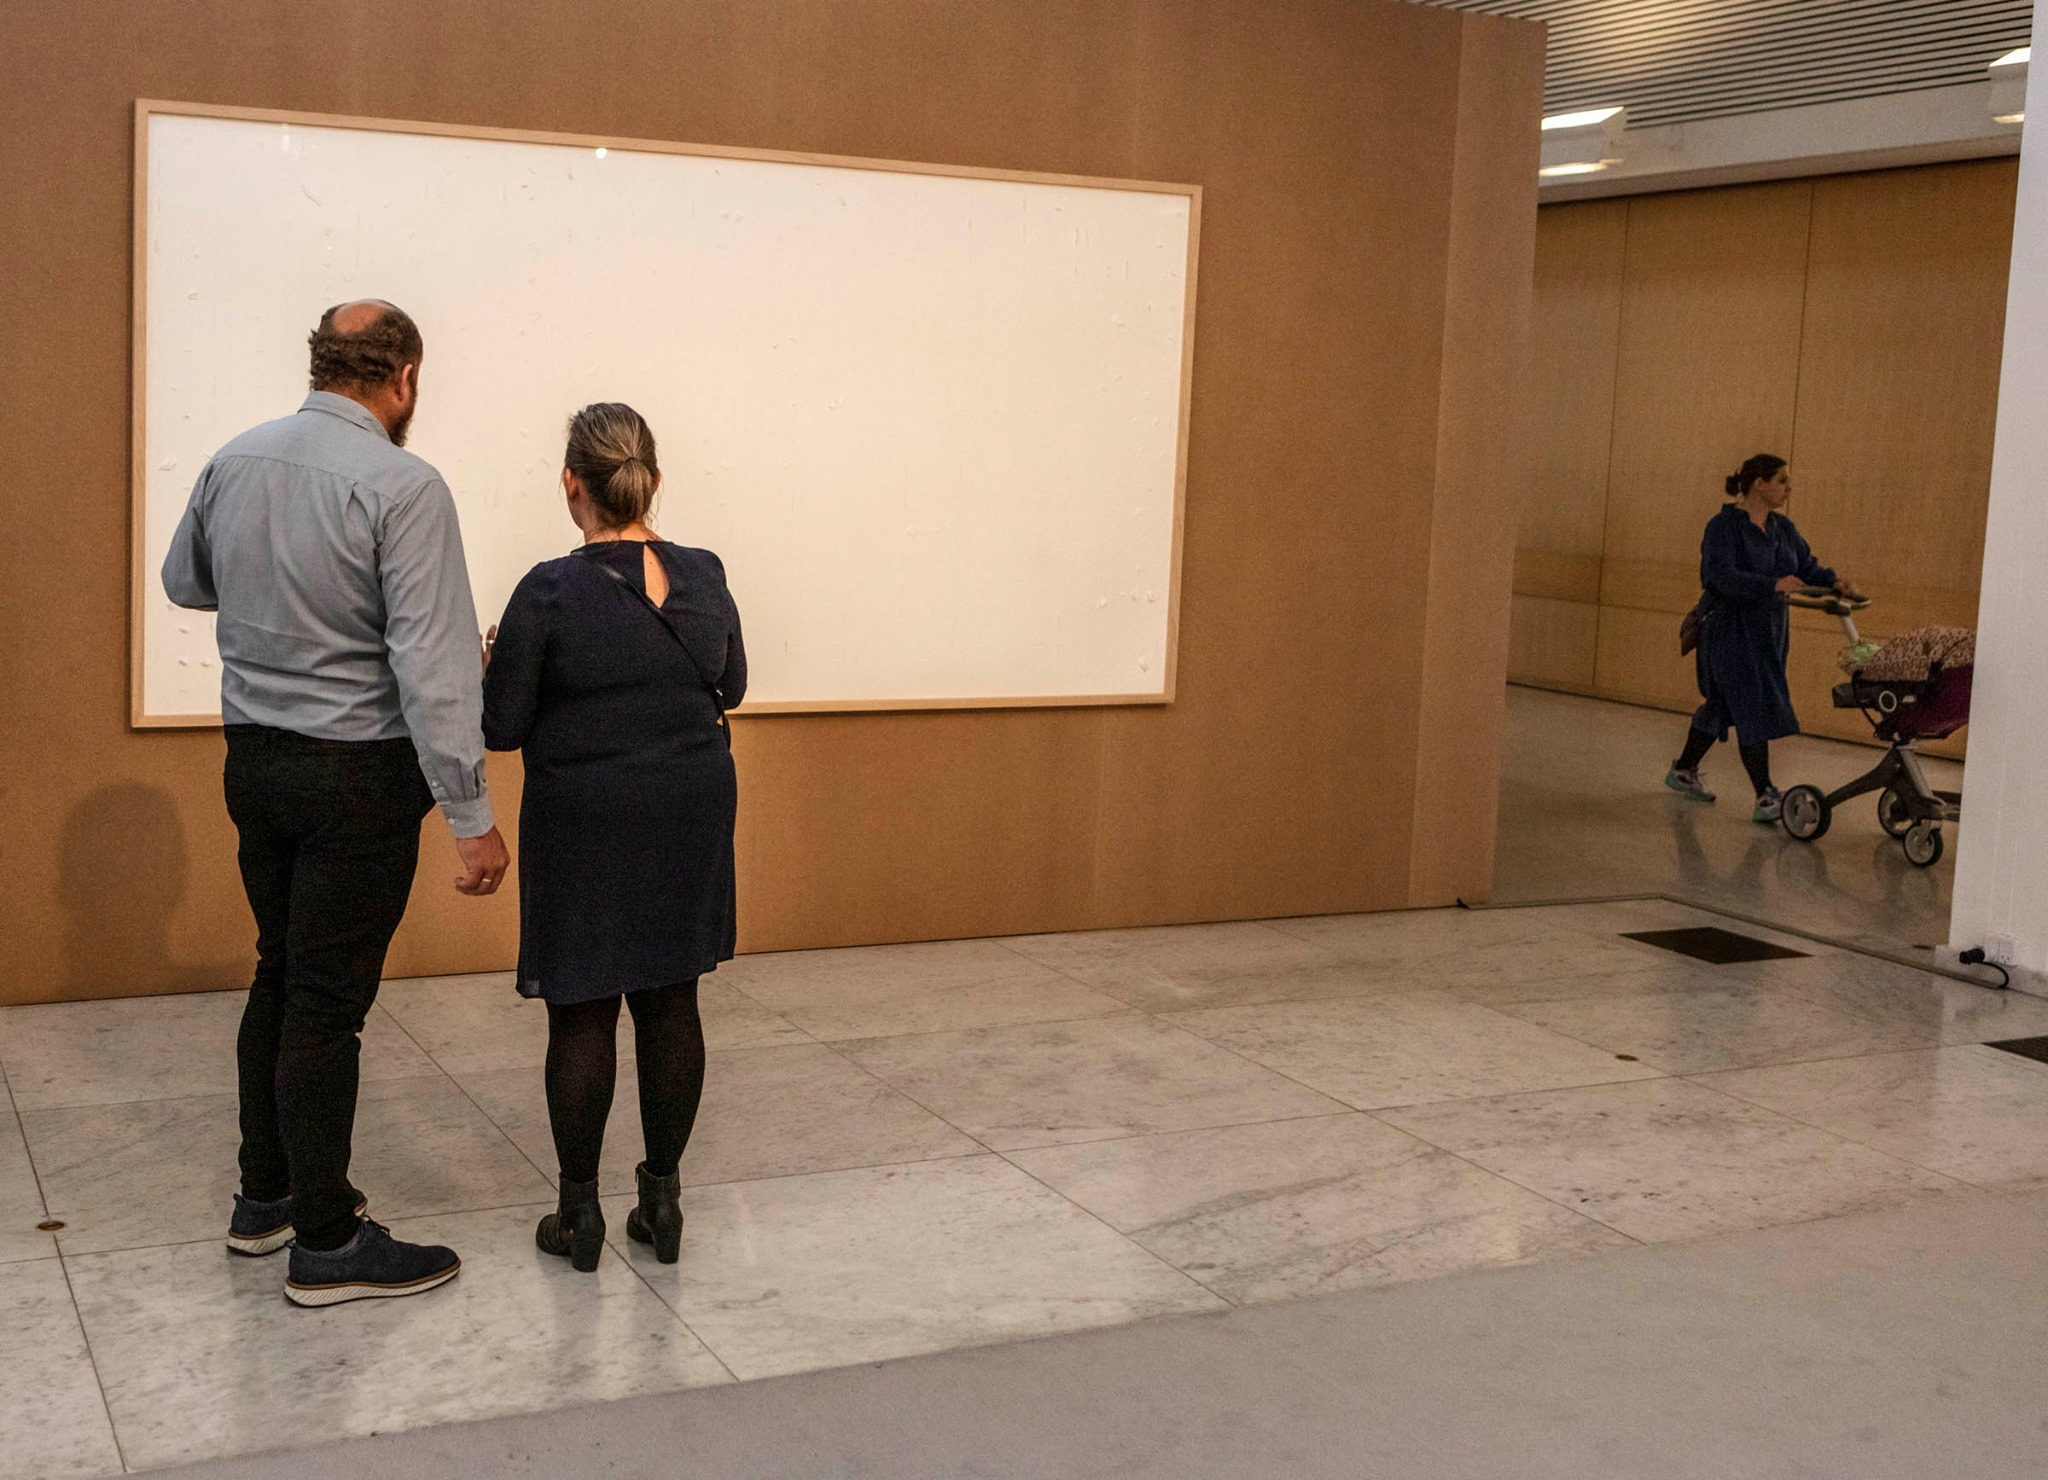 丹麥藝術家哈寧收博物館244萬薪酬卻交出2張空白畫布